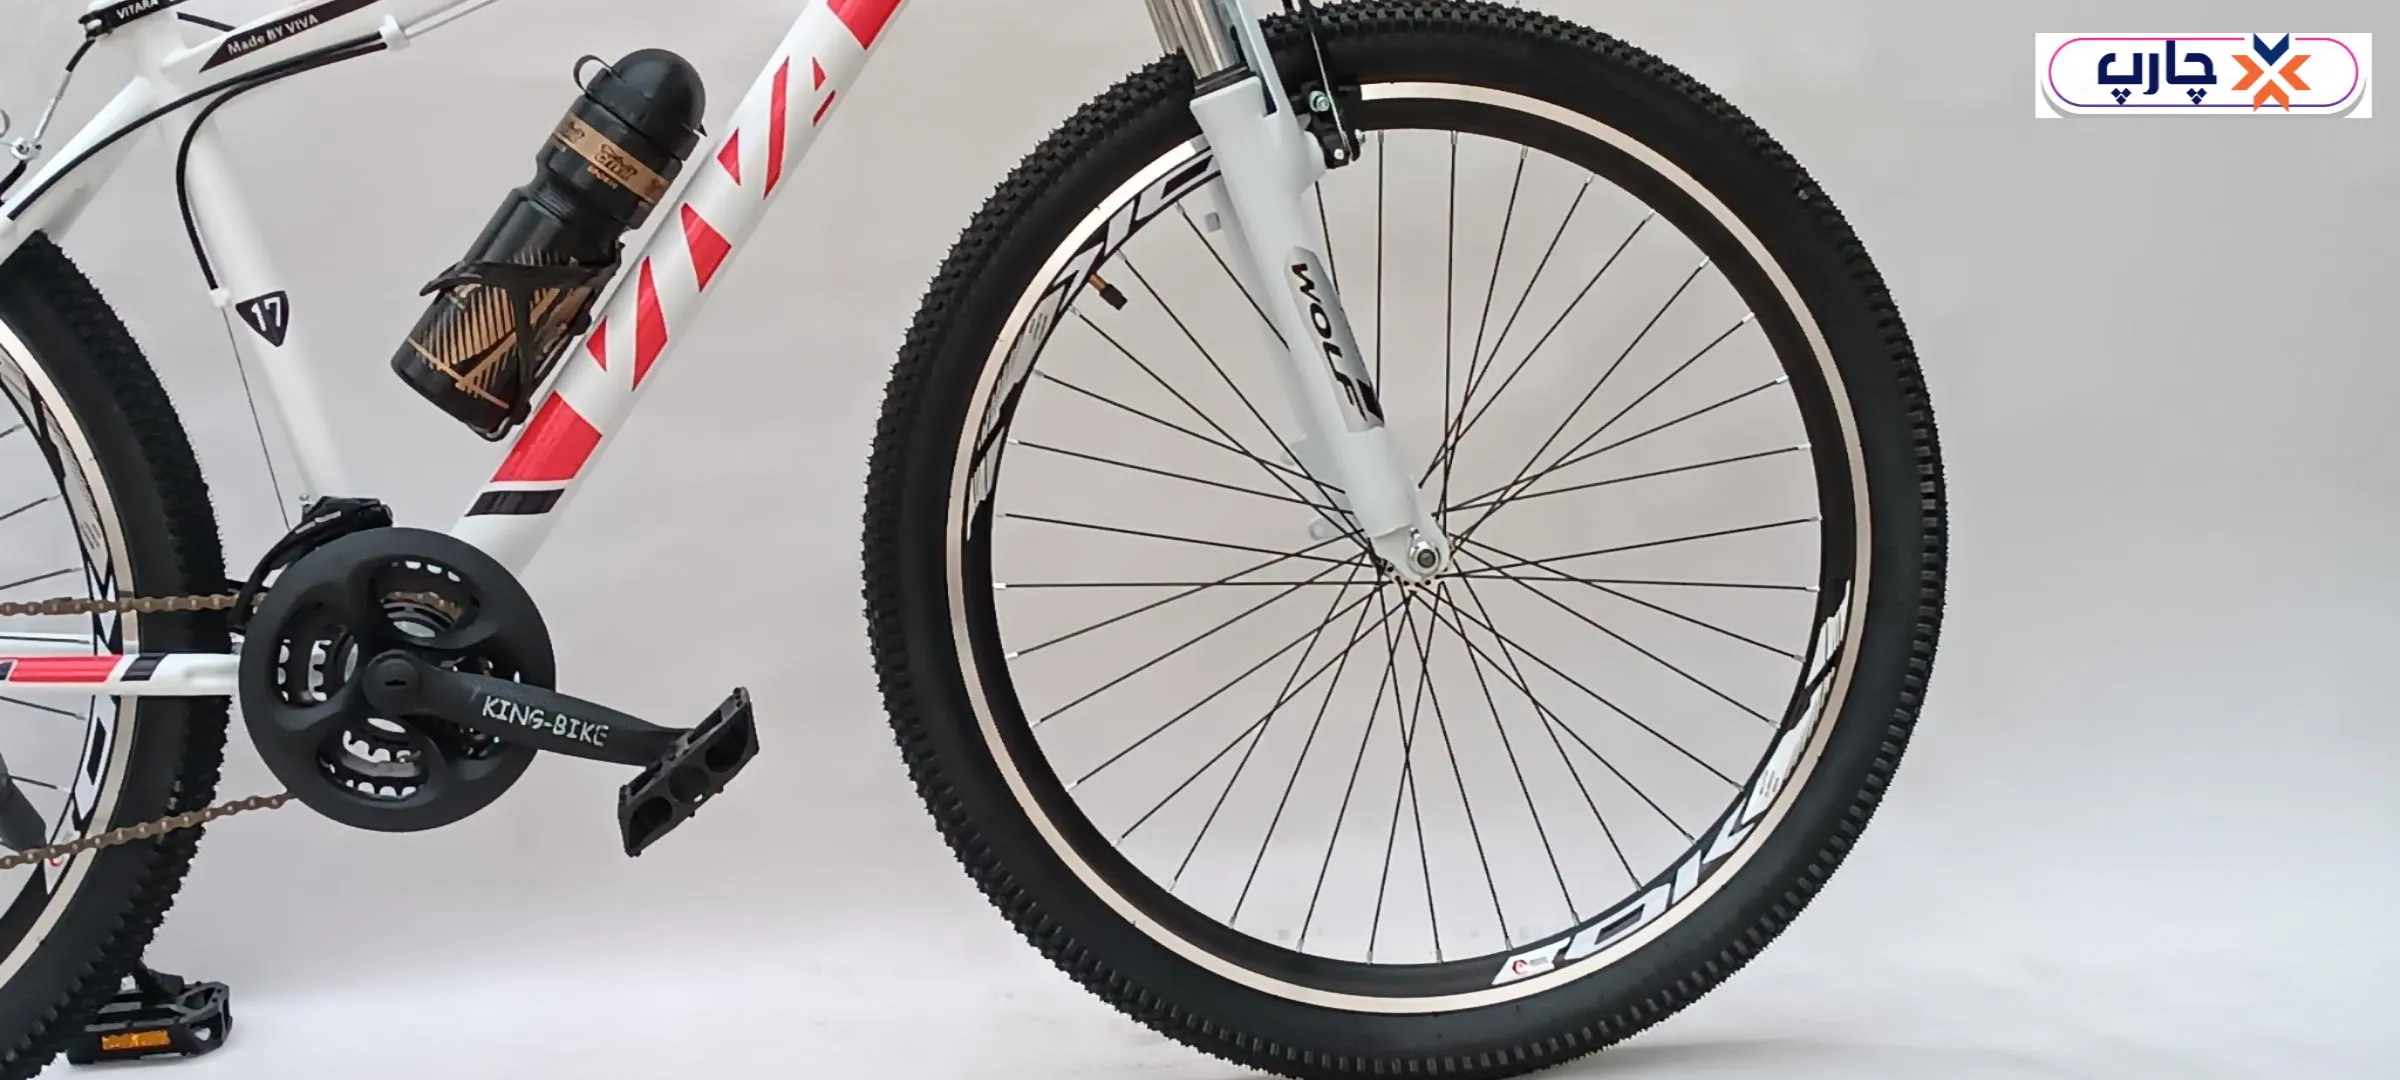 دوچرخه کوهستان طرح ویوا Viva سایز 26